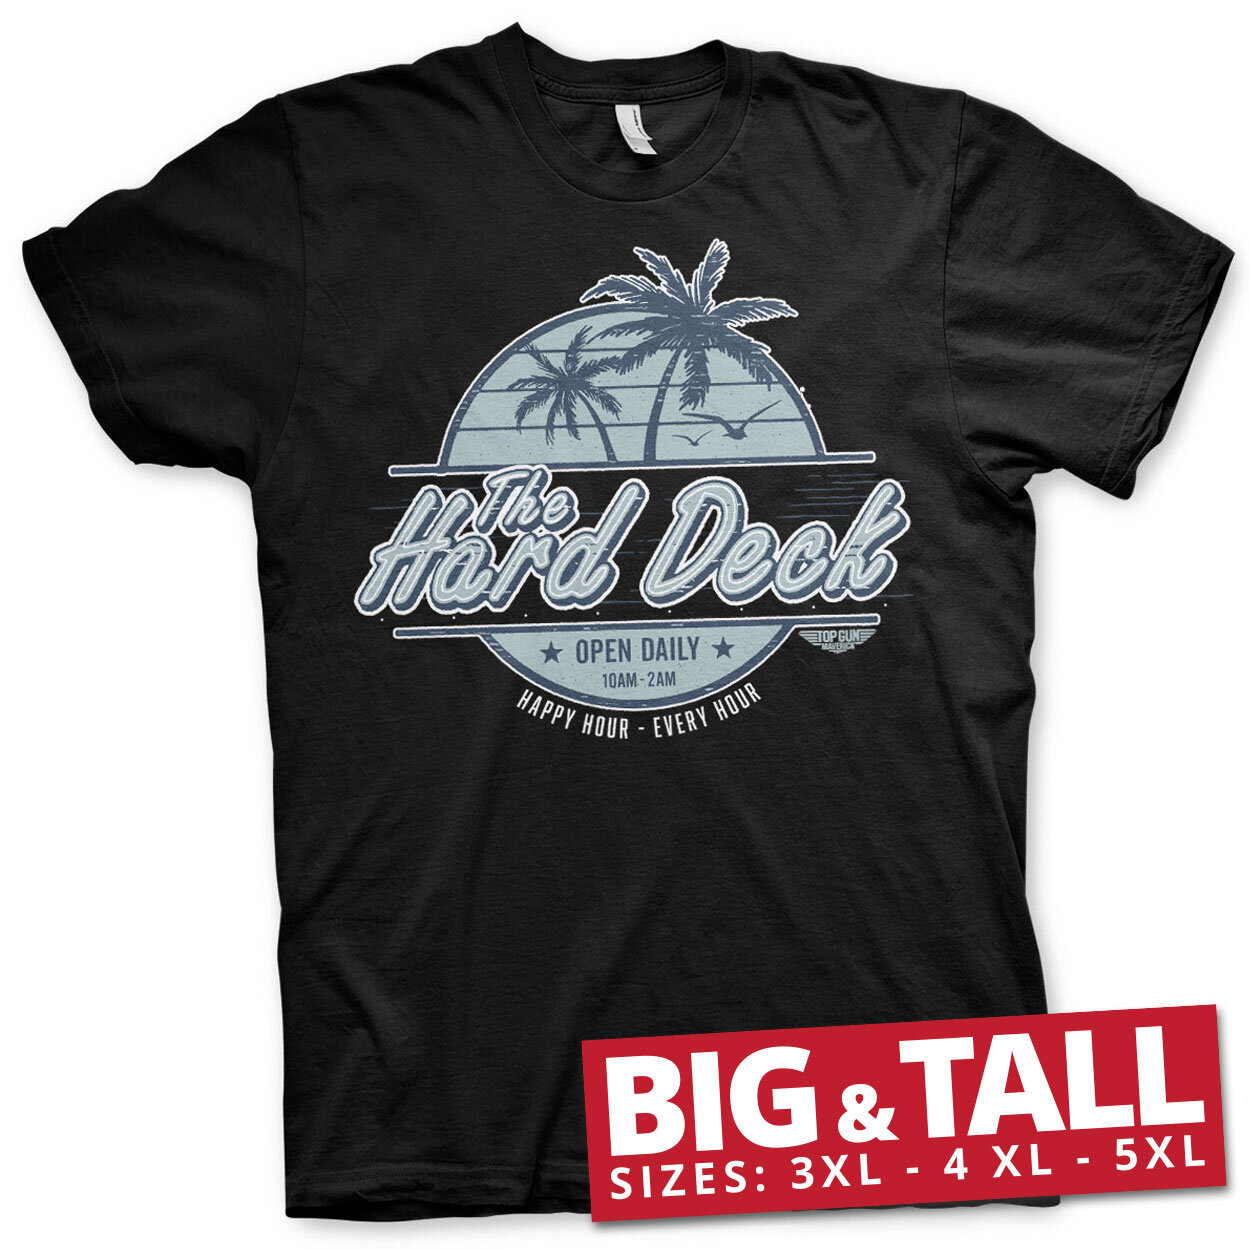 The Hard Deck Big & Tall T-Shirt